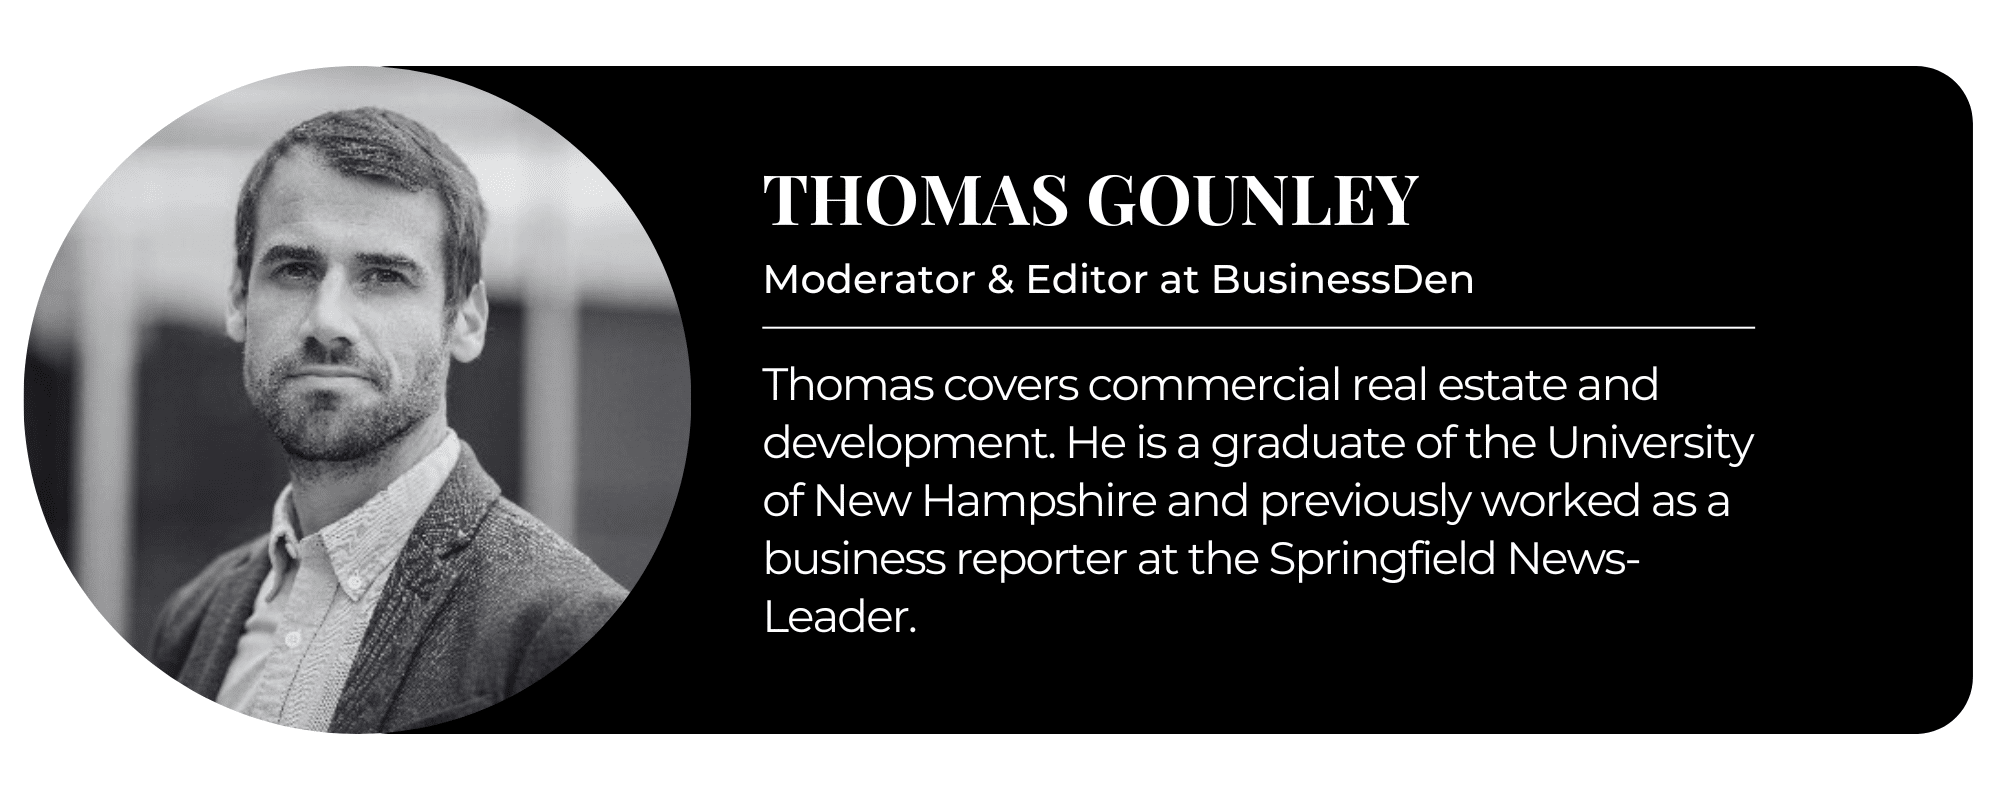 Thomas Gounley 1 2